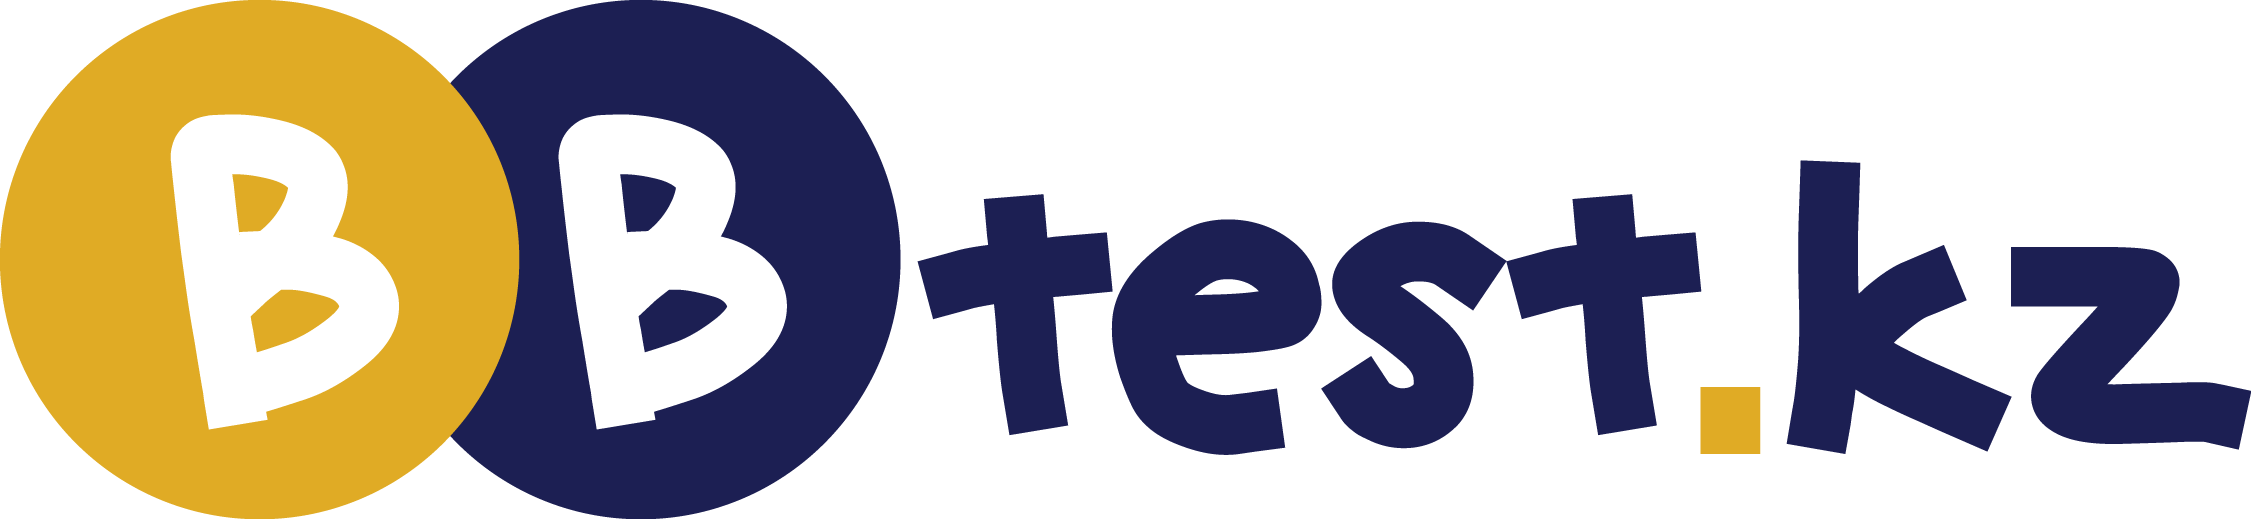 bbTest.kz Logo